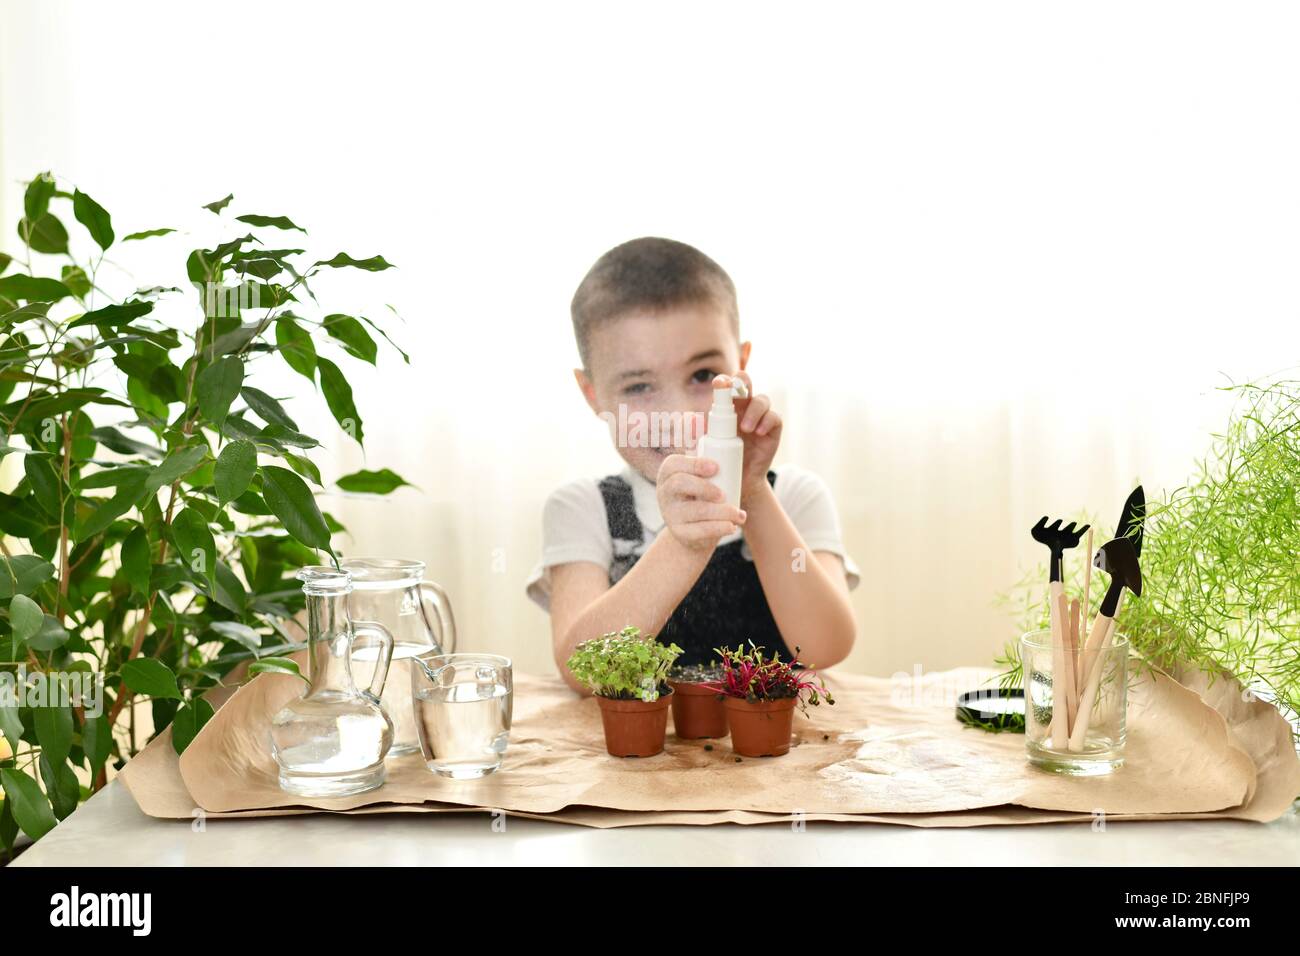 L'enfant s'occupe des plantes germées dans des pots. L'eau qui éclabousse devant lui prend son but. Banque D'Images